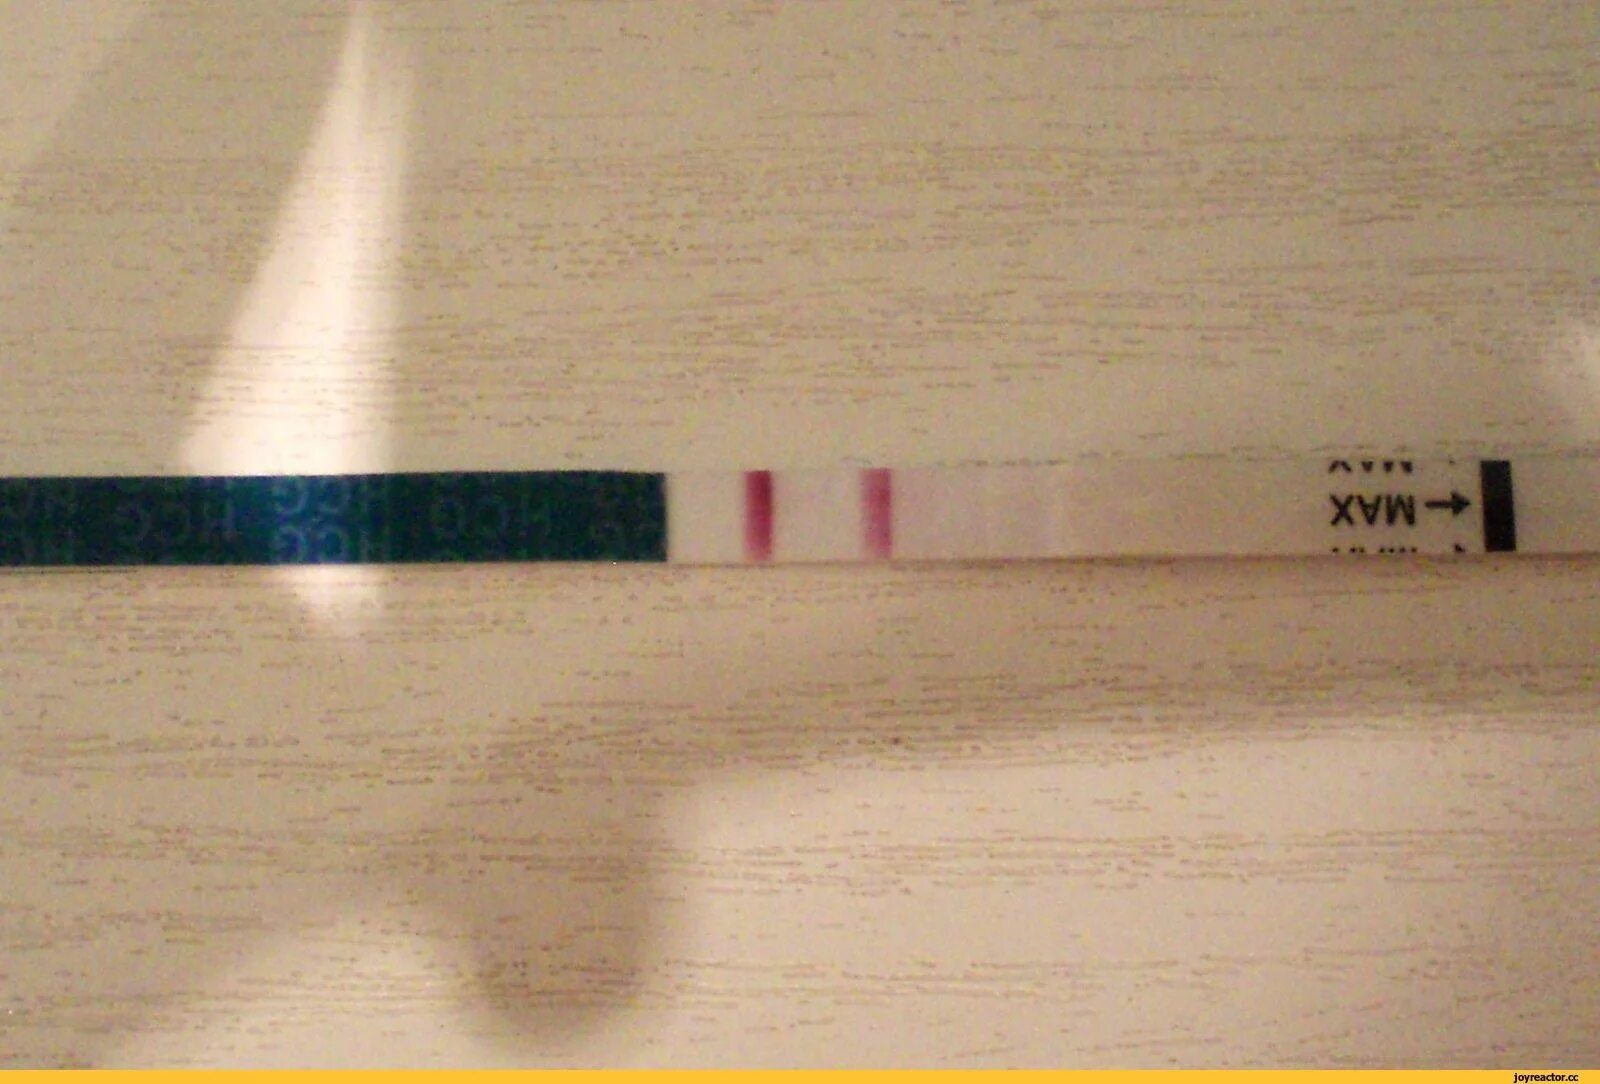 Тест полоска как делать. Тест на беременность 2 poloska. Тест на беременность с 2 тест полосками. Тест на беременность 2 полоски фото. Тест на беременность 2 полосочки.